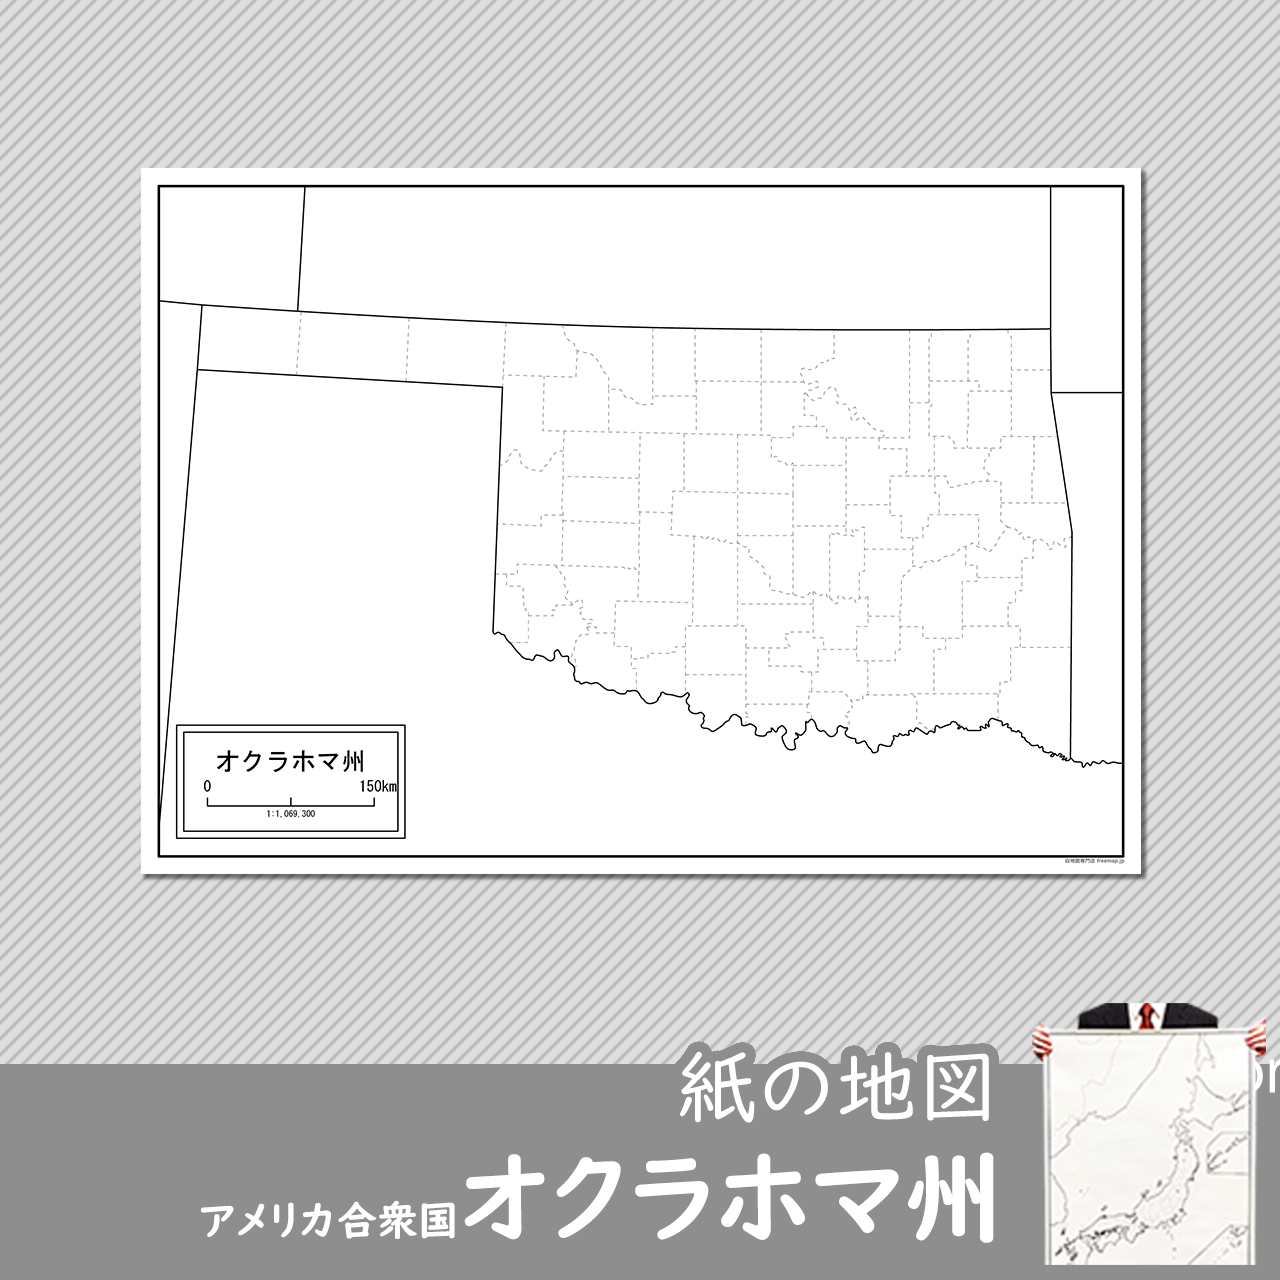 オクラホマ州の紙の白地図のサムネイル